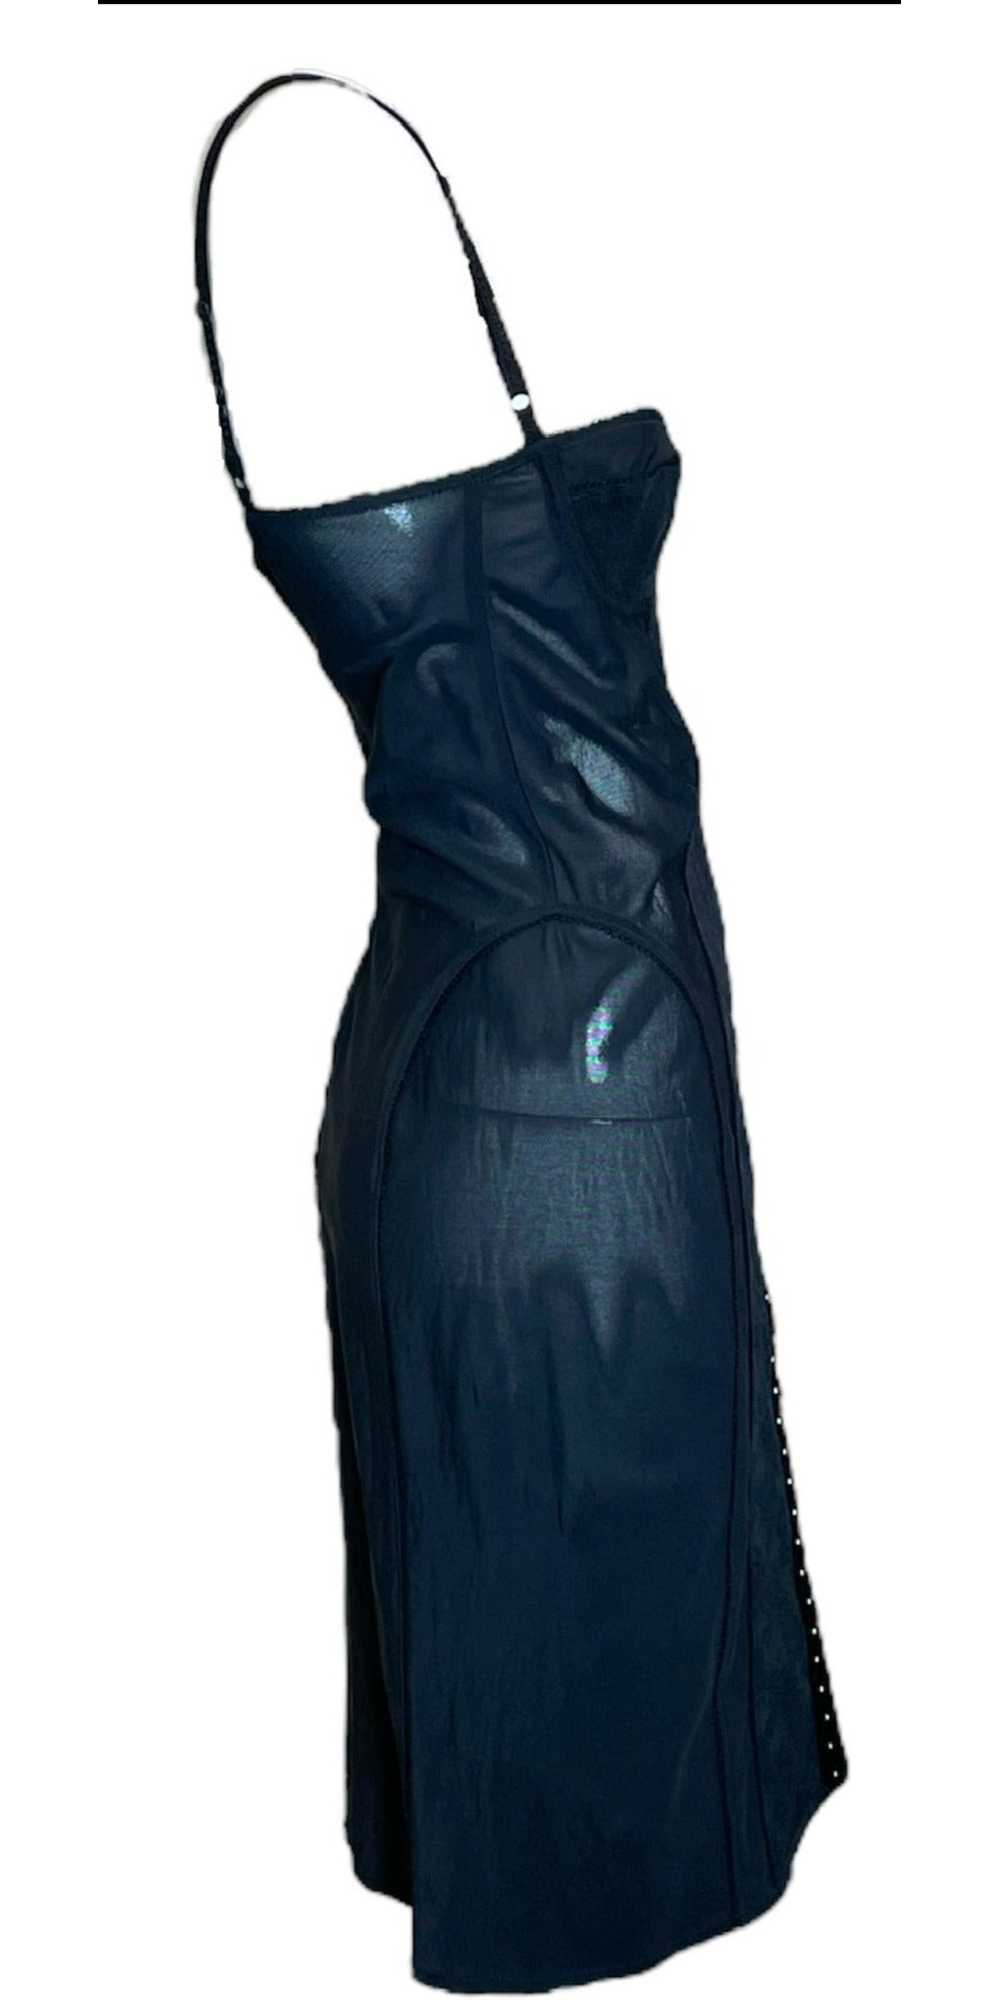 Dolce & Gabbana Y2K Black Mesh Lingerie Dress wit… - image 2